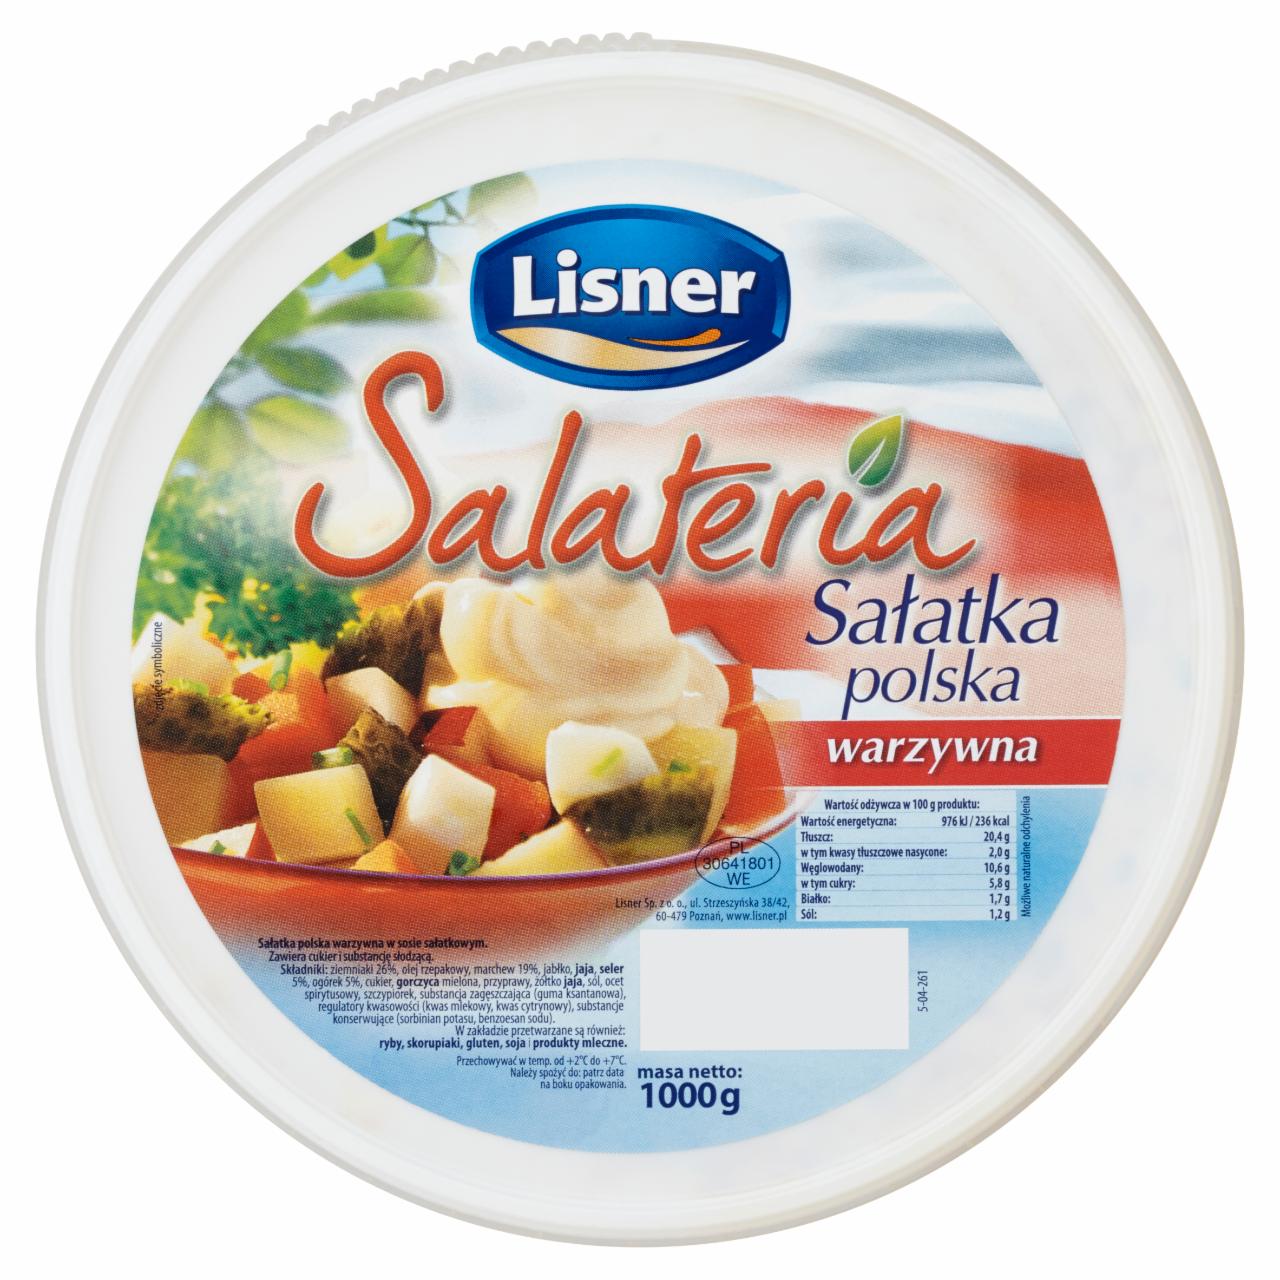 Zdjęcia - Lisner Salateria Sałatka polska warzywna 1000 g